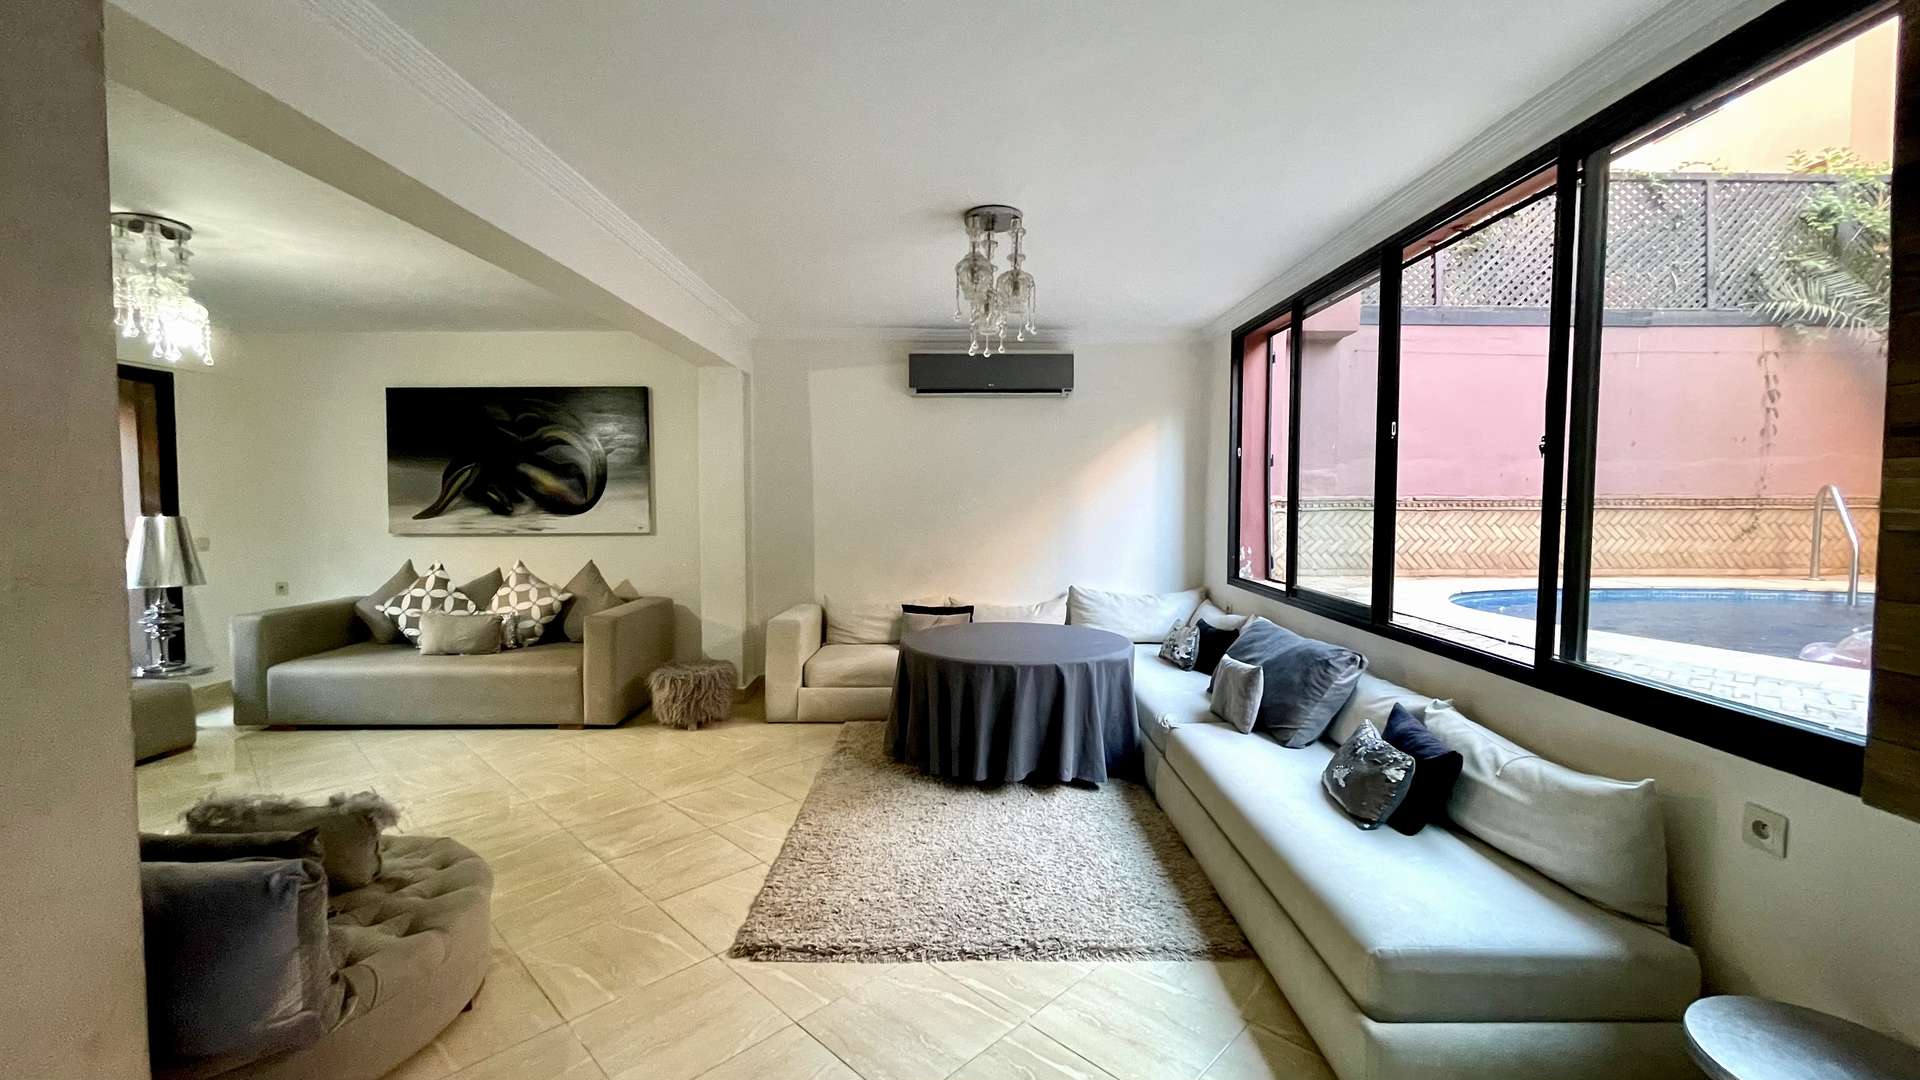 Vente,Villa,Villa 5 chambres avec piscine  en vente à Targa,Marrakech,Targa